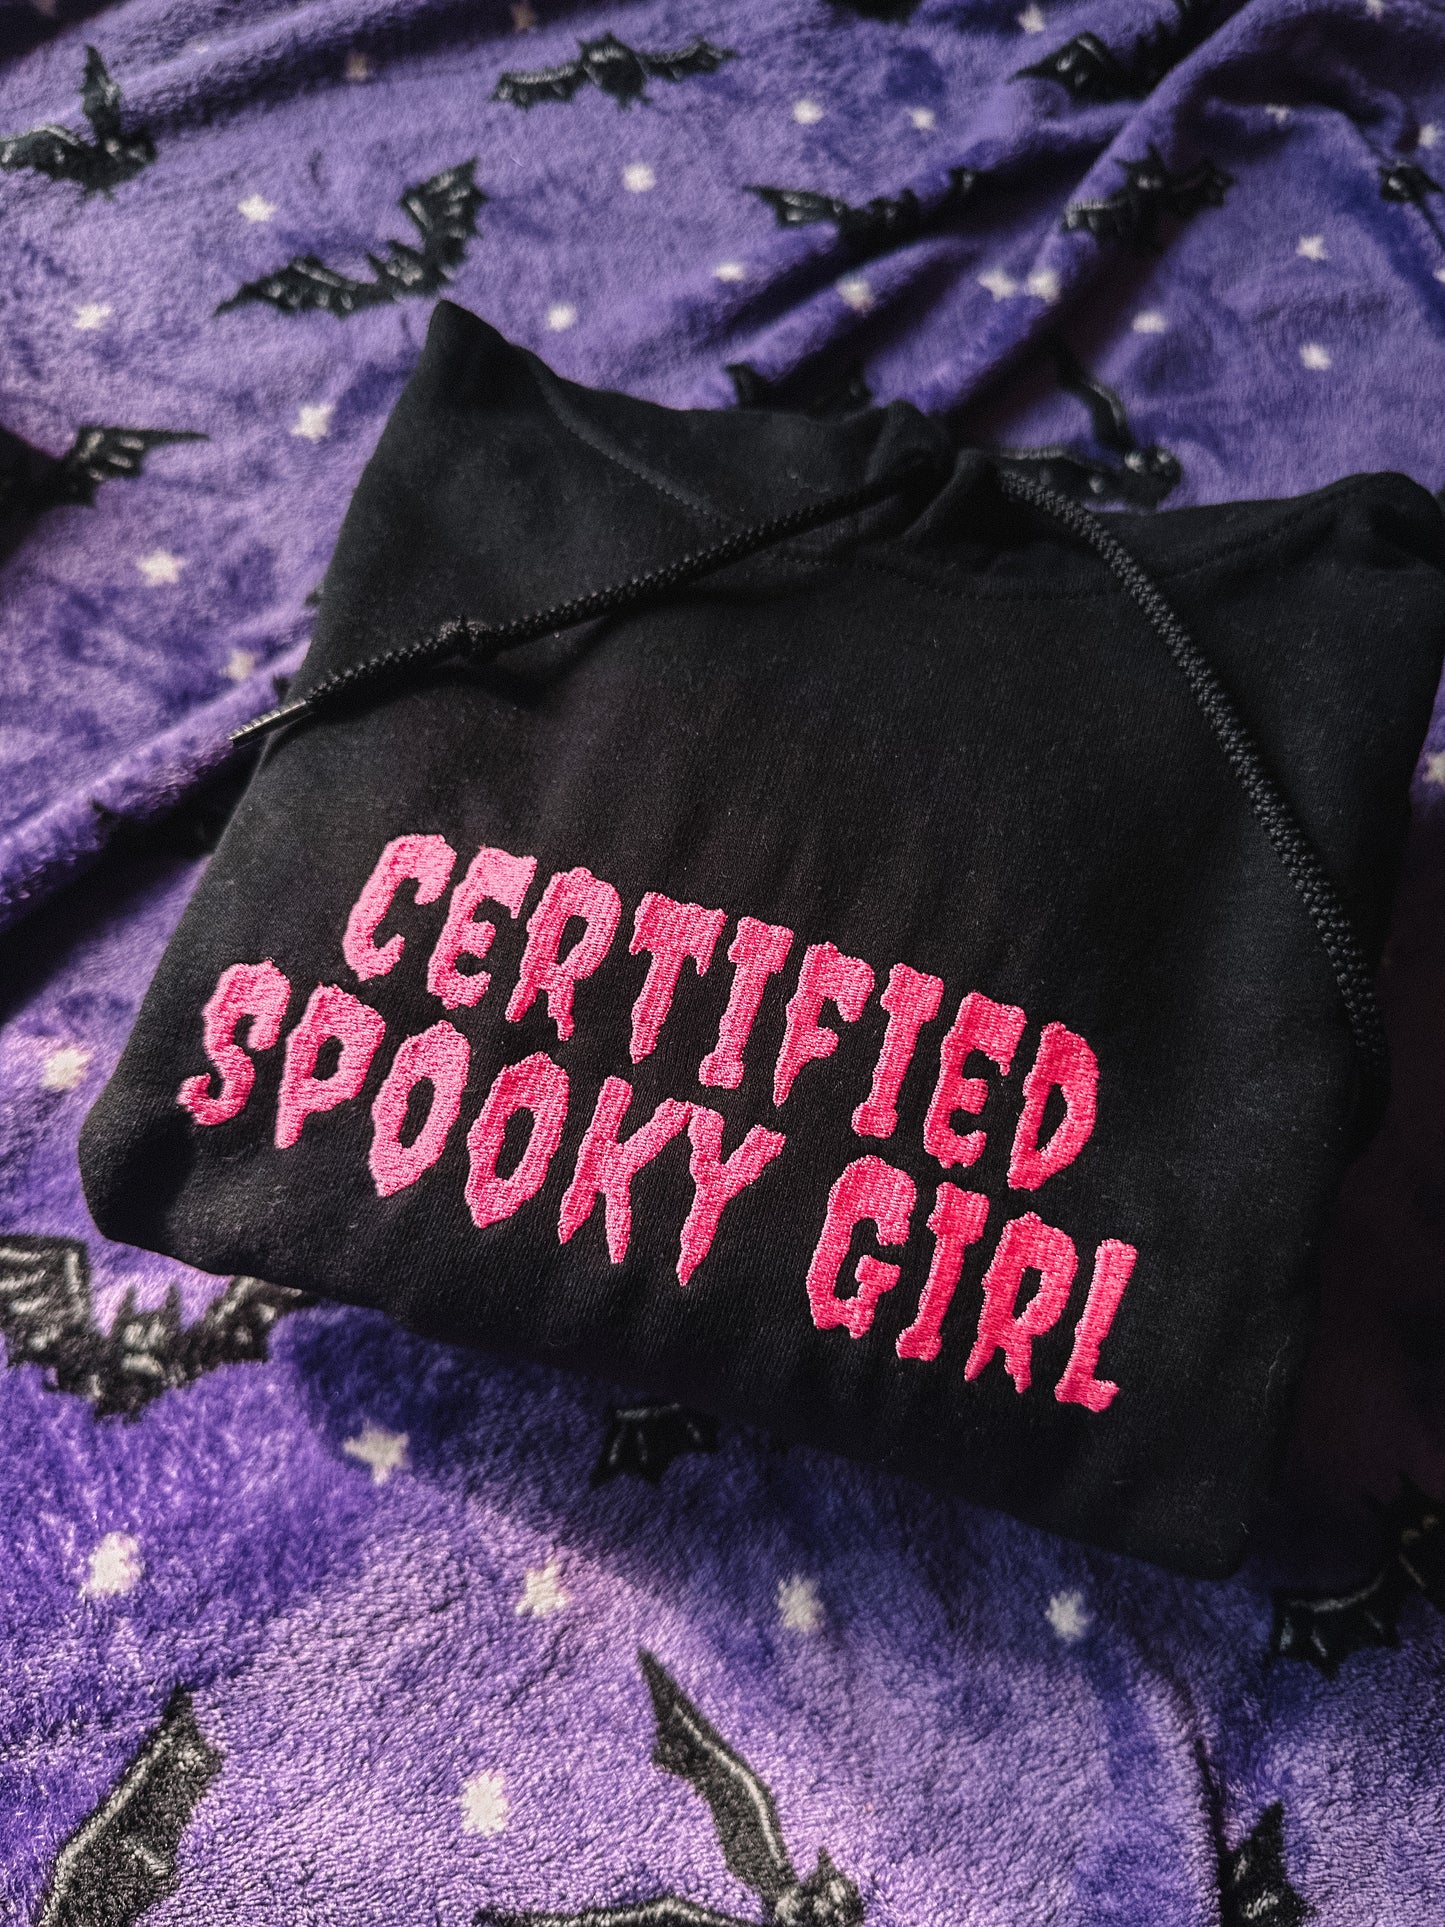 Certified Spooky Girl/Boy hooded sweatshirt